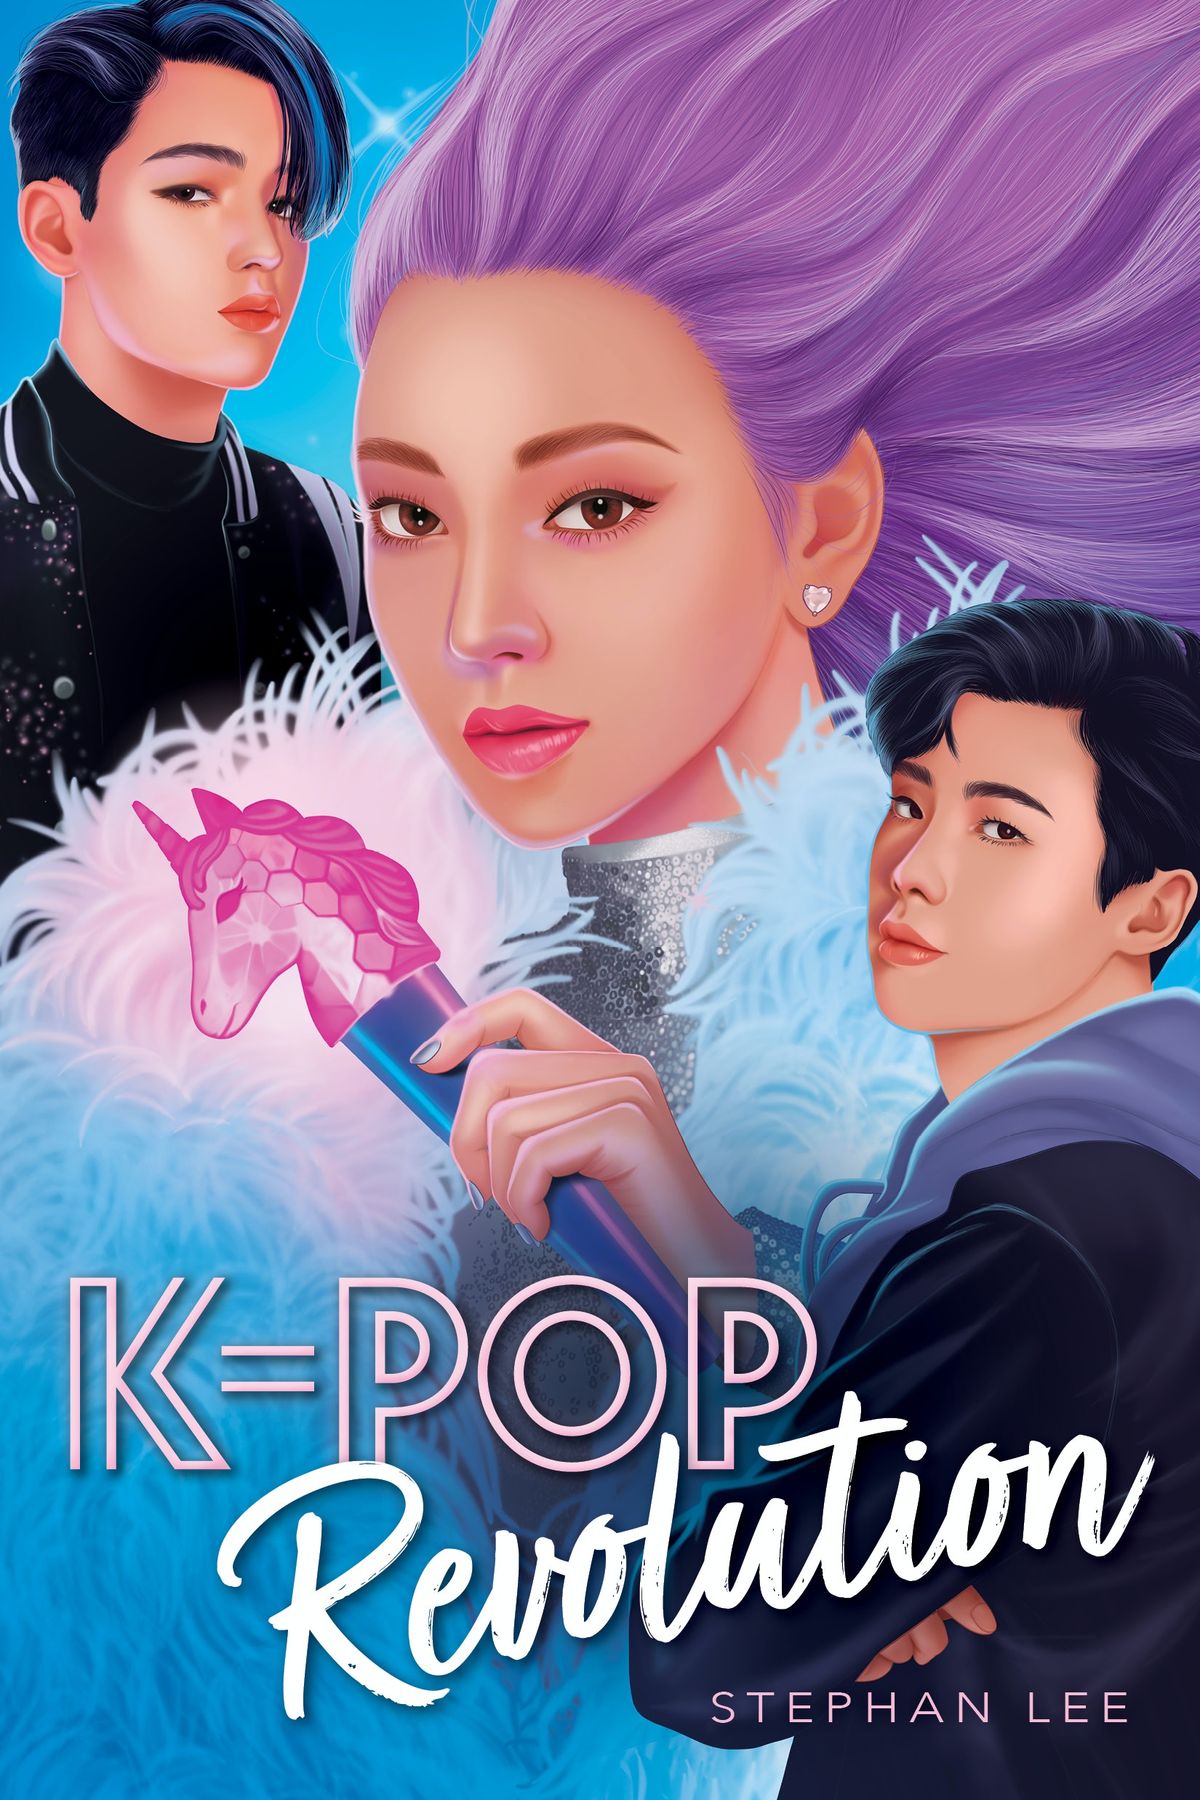 ステファン・リーのK-Pop機密続編、K-Pop革命を最初に見てみましょう